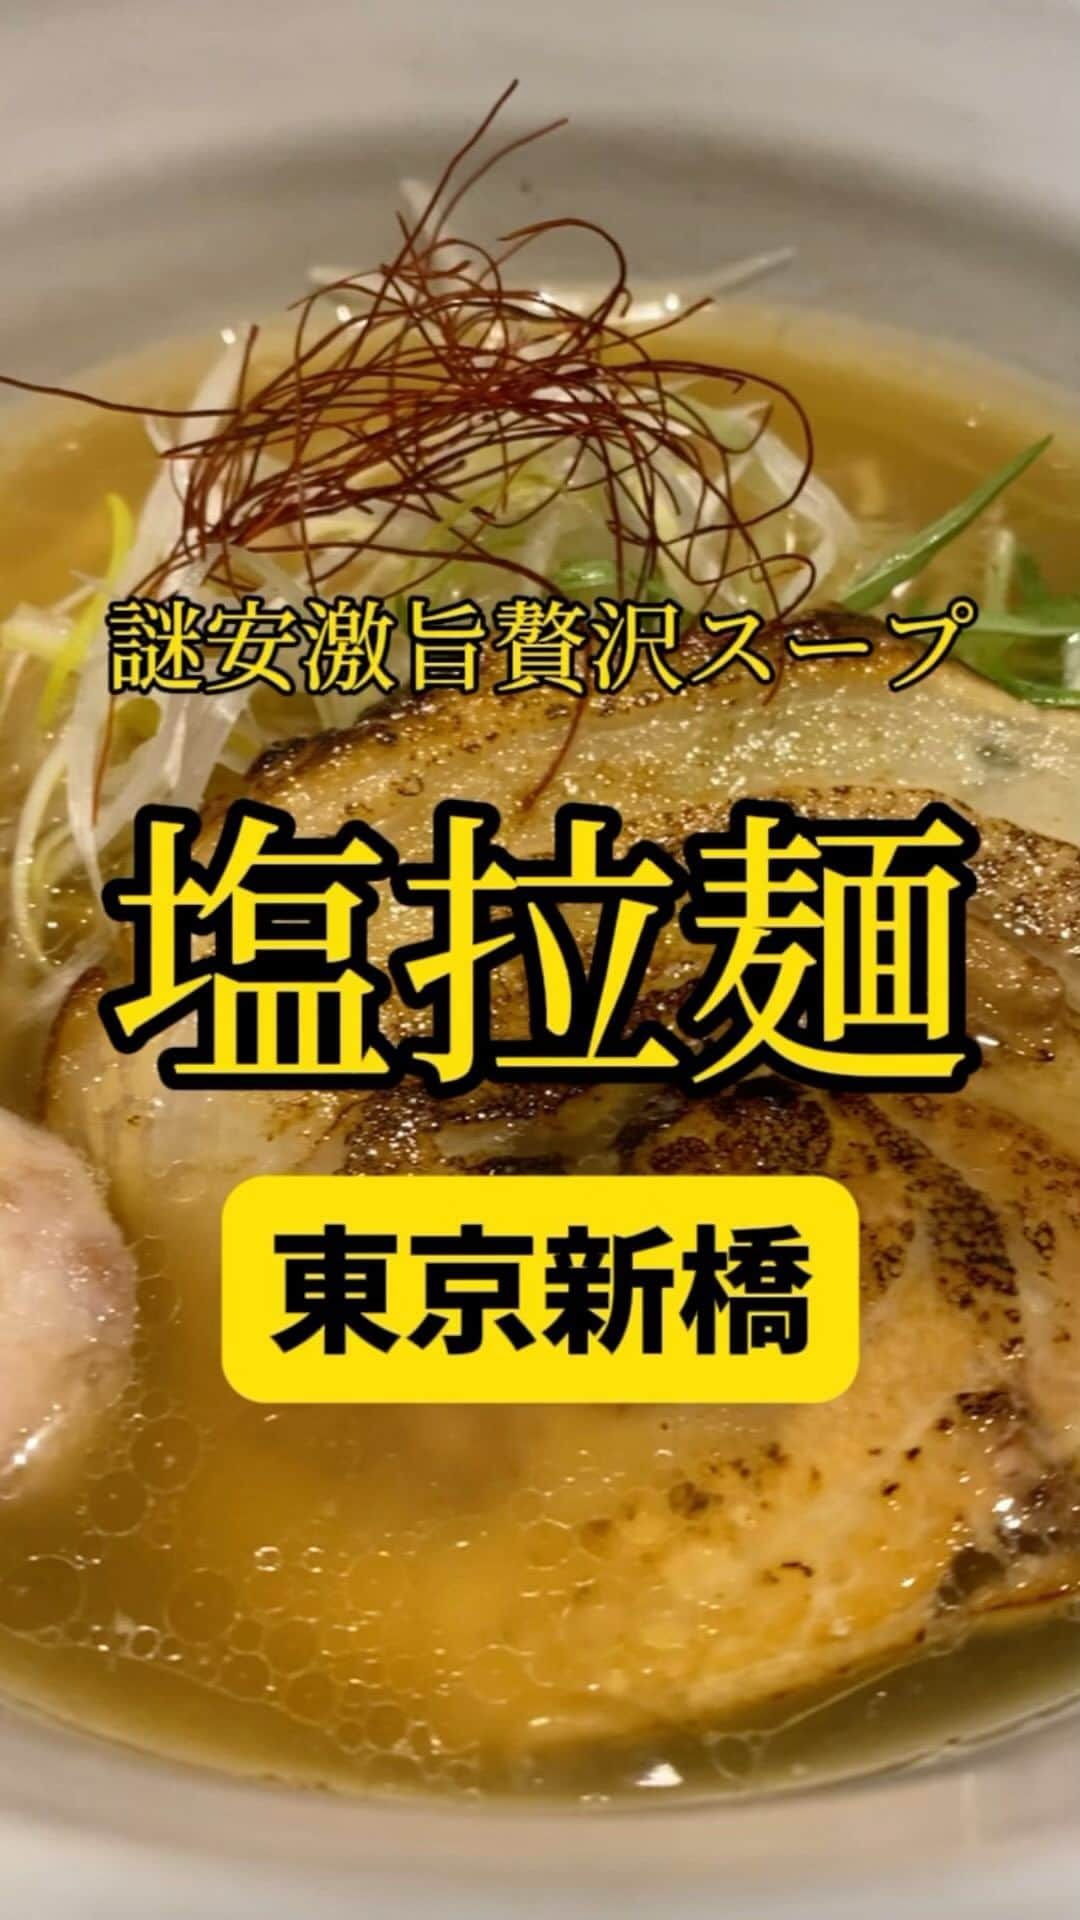 Mr.FISHEYE/魚眼男のインスタグラム：「スープへの投資がヤバいのに謎安の塩ラーメン🍜東京/新橋/築地市場「麺処 銀笹 （ぎんざさ）」  (美味しいお店など情報をなるべく早めに紹介するので @ryo_onoma をお願いします🙇‍♂️)  昔から有名なお店。食べログの点数もずっと高いまま。それにも関わらずこのお店でそんなに並んだ記憶がない。食べログの点数、評価は集客にそんなに関係ないのか、そう思ってしまうお店なのだ。味は食べログの評価、点数通りに良い感じ。これはずっと変わらない。何ひとつ変わらない。銀笹に行ったことがある人、どうだろう。塩ラーメンが好きだ。醤油ラーメンよりも塩ラーメンの方が美味さが分かるような気がするんだがどうか。醤油はめちゃくちゃ美味いやつは分かるが他が分からない、というのと、自分の体調によってその美味しさのキャッチレベルがめちゃくちゃ変わってしまう印象がある。こういうのあるよね、どうですか、自分だけかな。醤油だけに限らないと思うけど醤油は特にその差があるの。絶対あると思うんだ。あと普通のご飯ではなく鯛めしというのも面白い。ここでは絶対に鯛めしを頼んでしまう。鯛飯って美味いよな。そして何より塩のスープに合う。平和だ。  【麺処 銀笹 （ぎんざさ）】 📍東京都中央区銀座8-15-2 藤ビル 1F 📲03-3543-0280 🈺[月～金]11:30～15:00、17:30～22:00(スープがなくなり次第営業終了) [土]11:30～15:00 定休日：日曜日、祝日 🚶‍♂️築地市場駅から349m 🗒️頼んだメニュー：塩ラーメン、半鯛飯  #新橋グルメ #新橋ランチ #銀座グルメ #銀座ランチ #築地グルメ #築地ランチ #ディナー #ランチ #ラーメン #ラーメン屋 #ラーメン部 #ラーメン倶楽部 #ラーメンパトロール #ラーメン女子 #ラーメン男子 #ラーメン大好き #ラーメン好きな人と繋がりたい #ラーメン好き #らーめん #らーめん部 #らーめん大好き #らーめん好きな人と繋がりたい #塩ラーメン #東京グルメ#東京ラーメン #ラーメンインスタグラマー #ラオタ #ラヲタ」